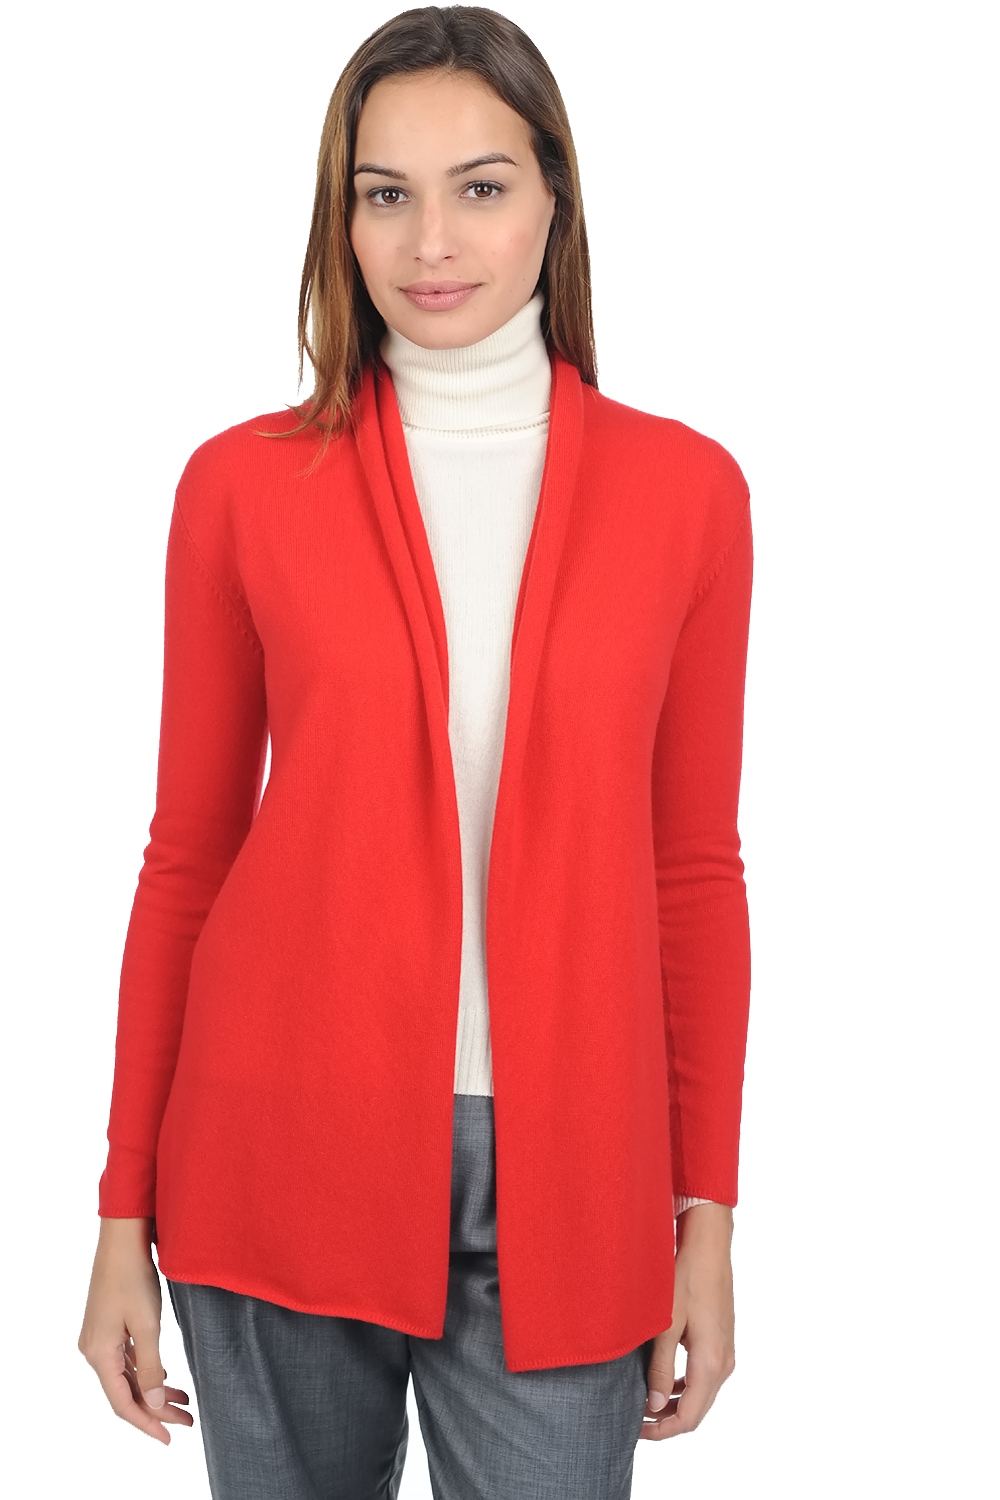 Cachemire robe manteau femme pucci premium rouge 4xl